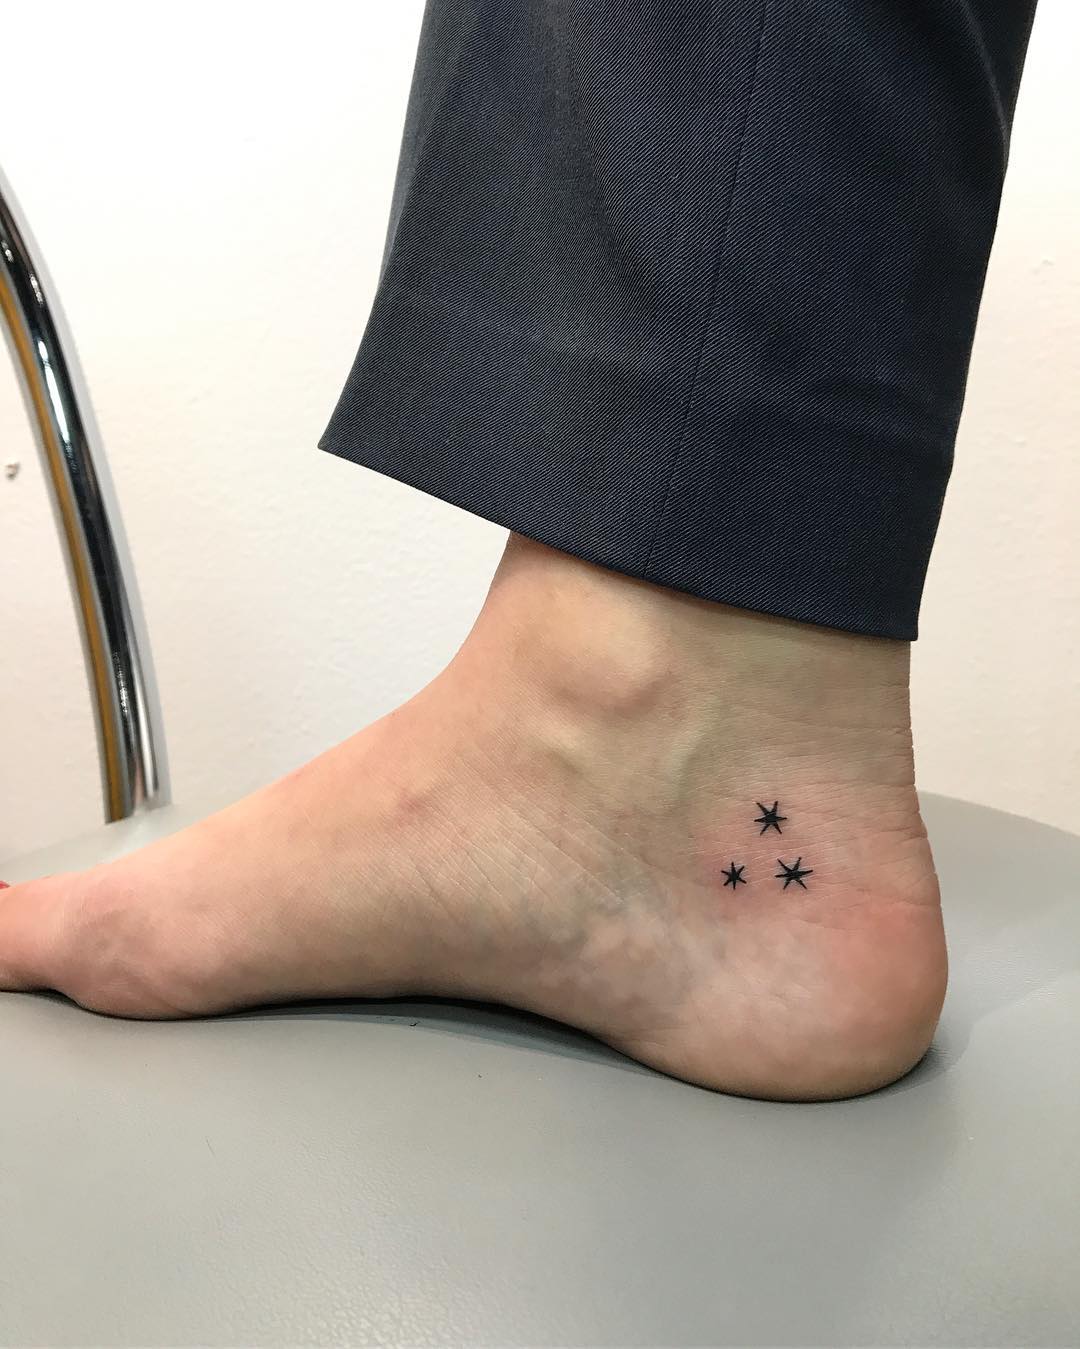 Tatuagem no pé: 100 fotos de tattoos para você se inspirar e fazer a sua